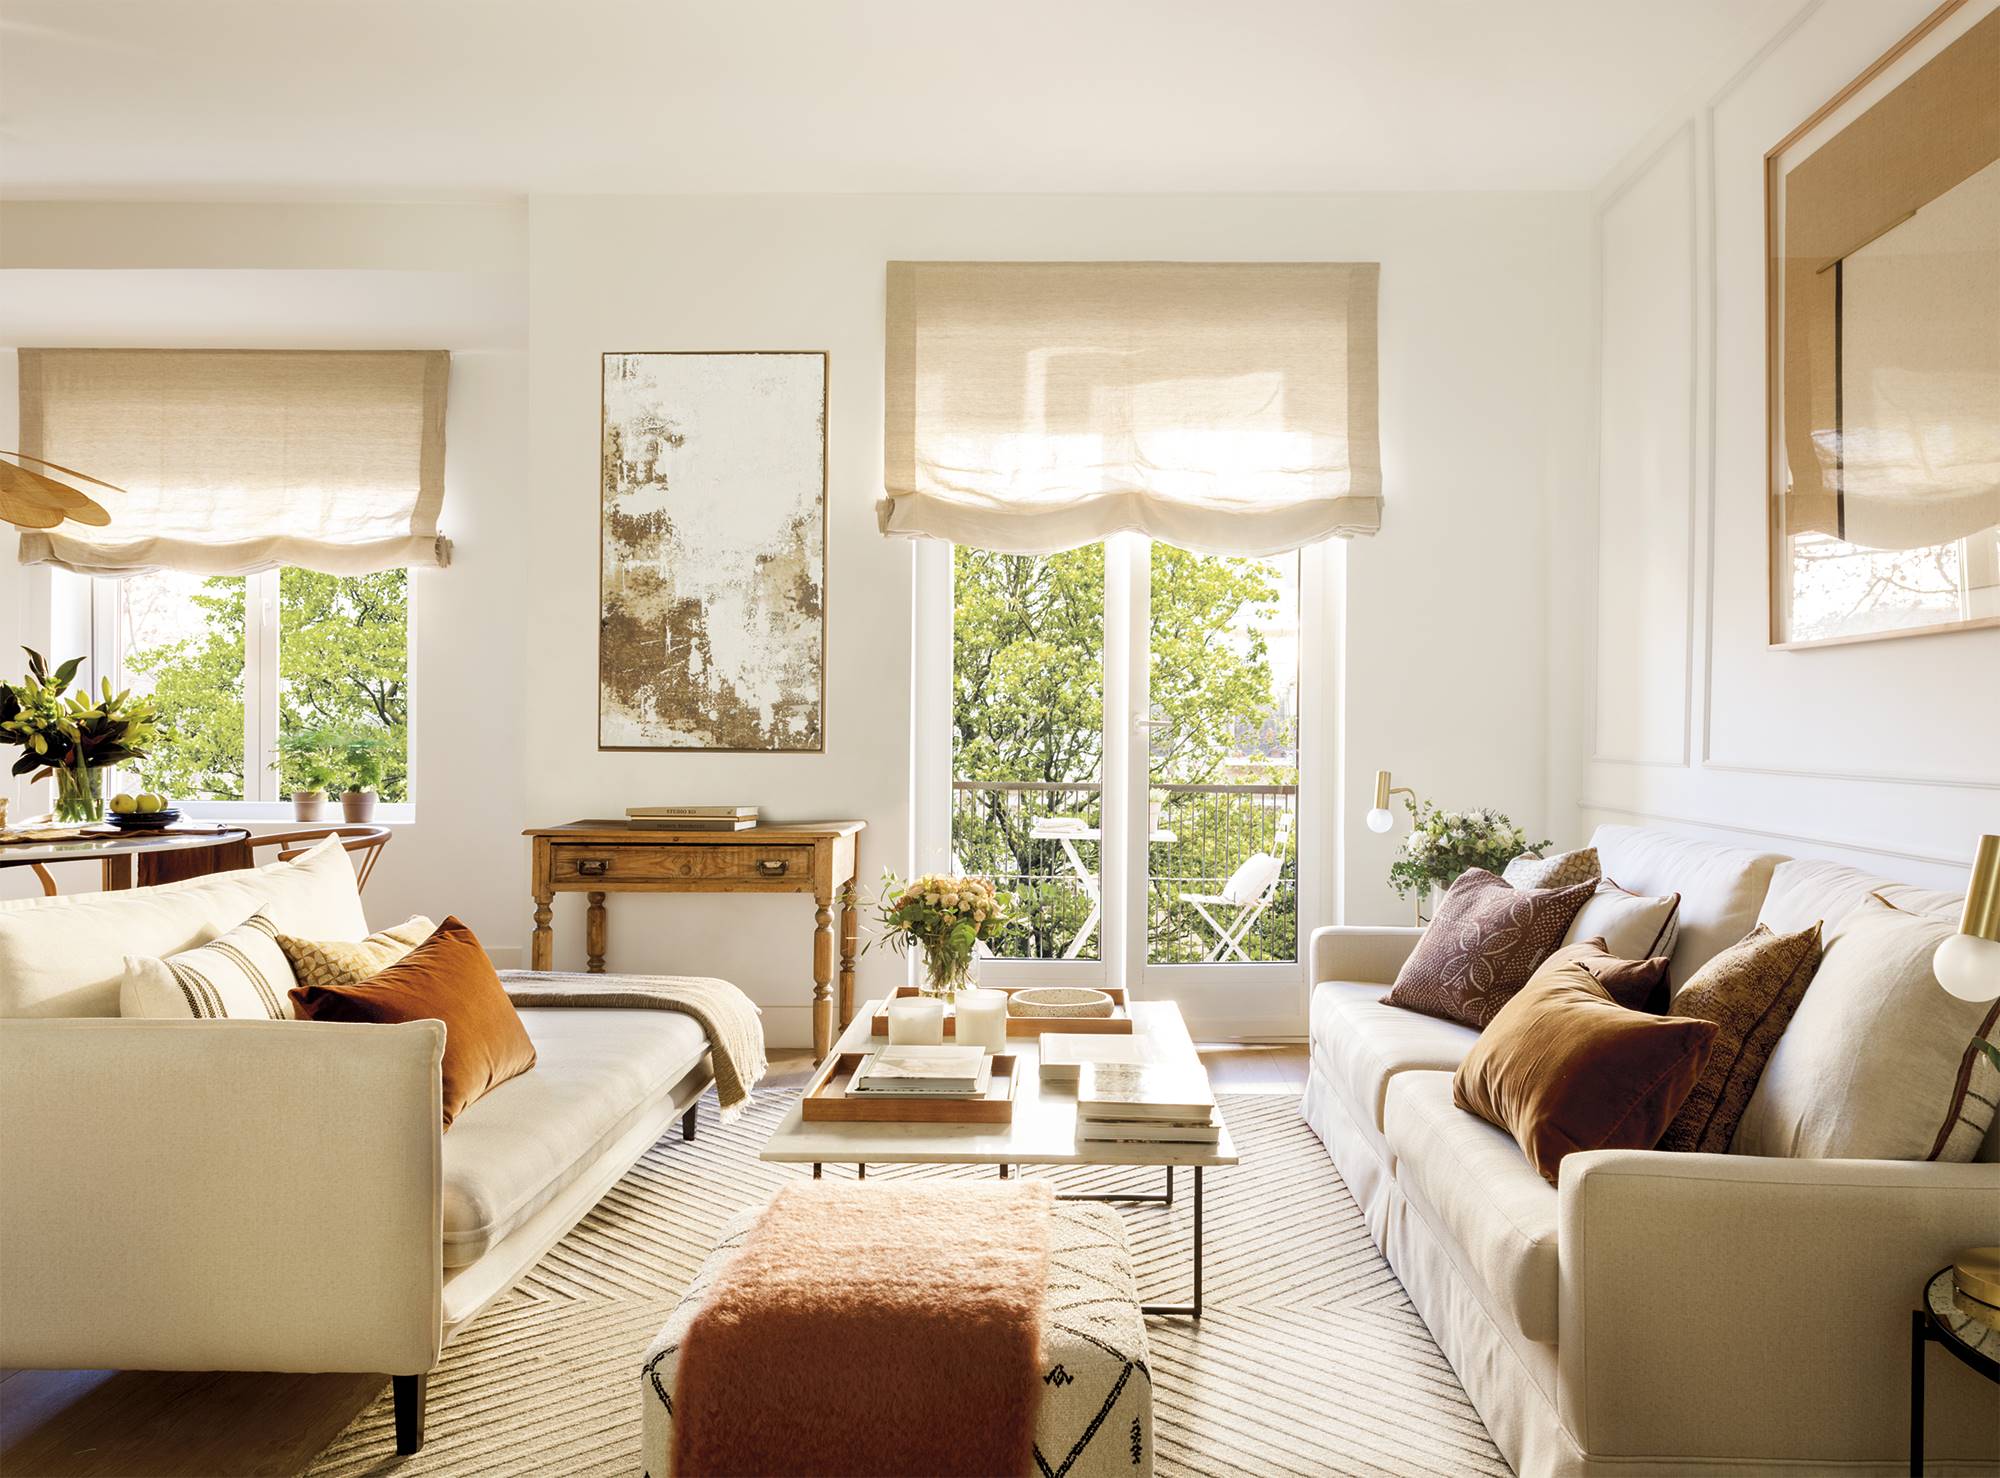 Sala de estar moderna con sofá, puf y estores en color crema, y cojines y cuadros en colores tierra. 